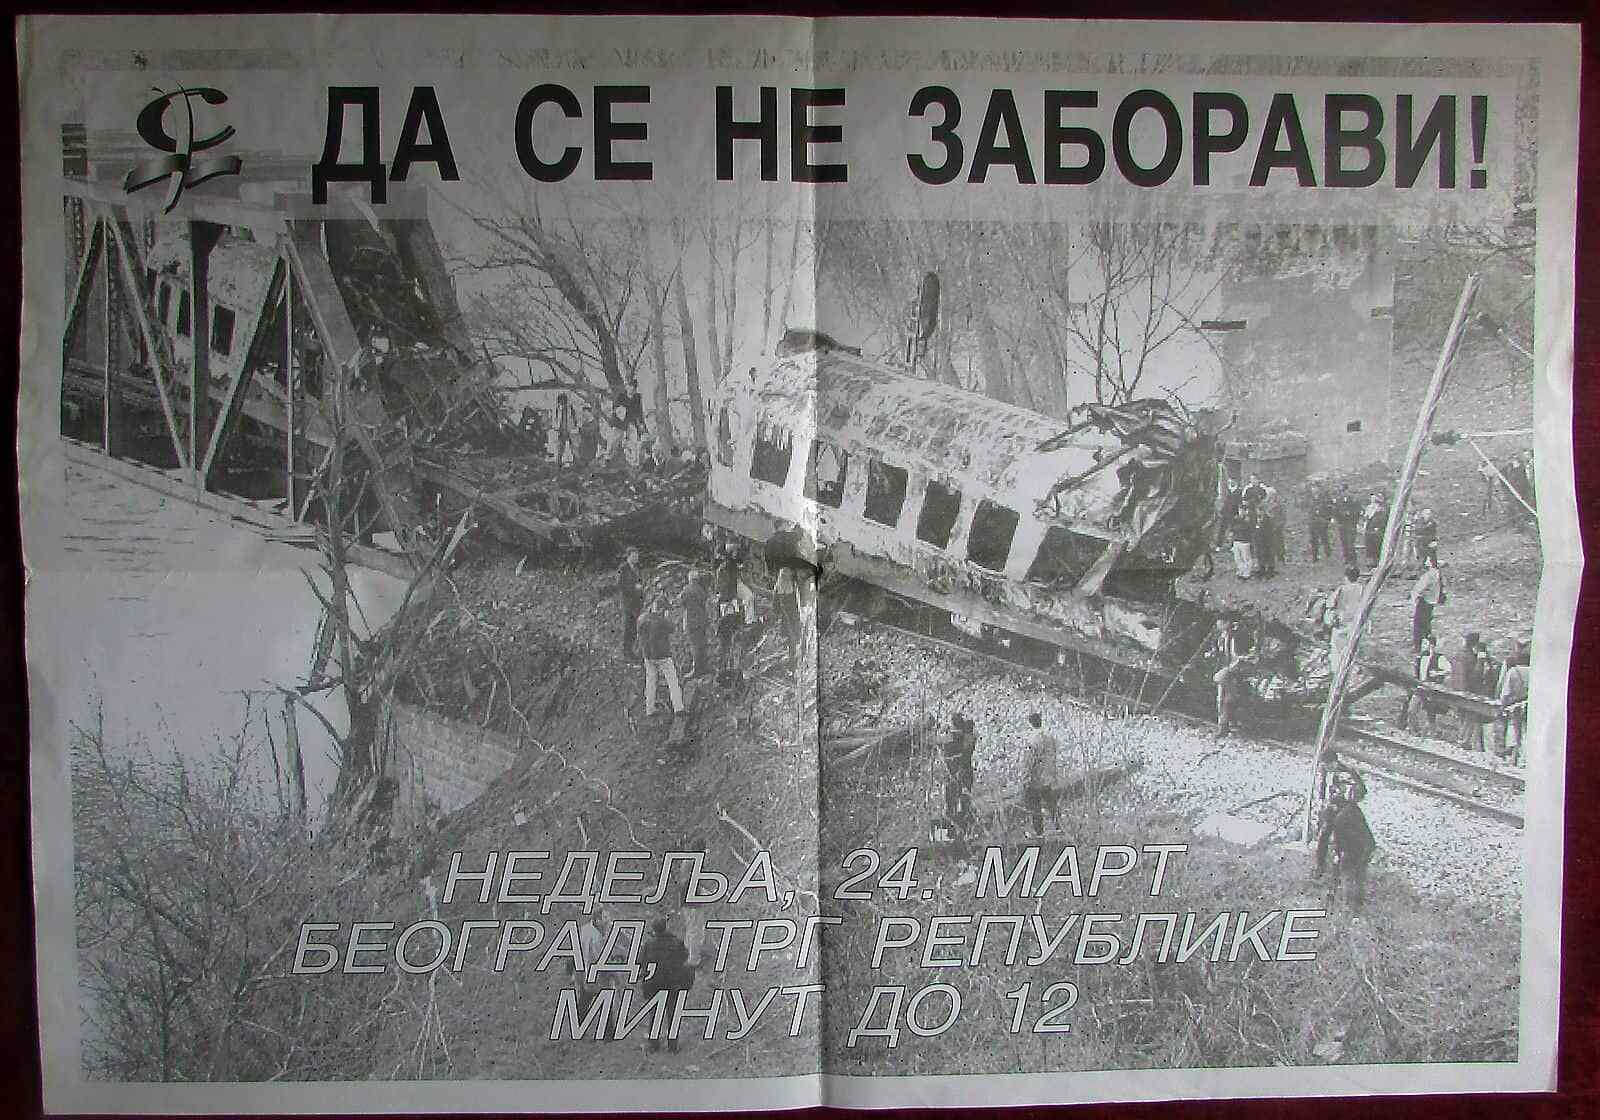 2007 Original Poster Train Bombing Grdelica Commemoration Yugoslavia NATO 1999